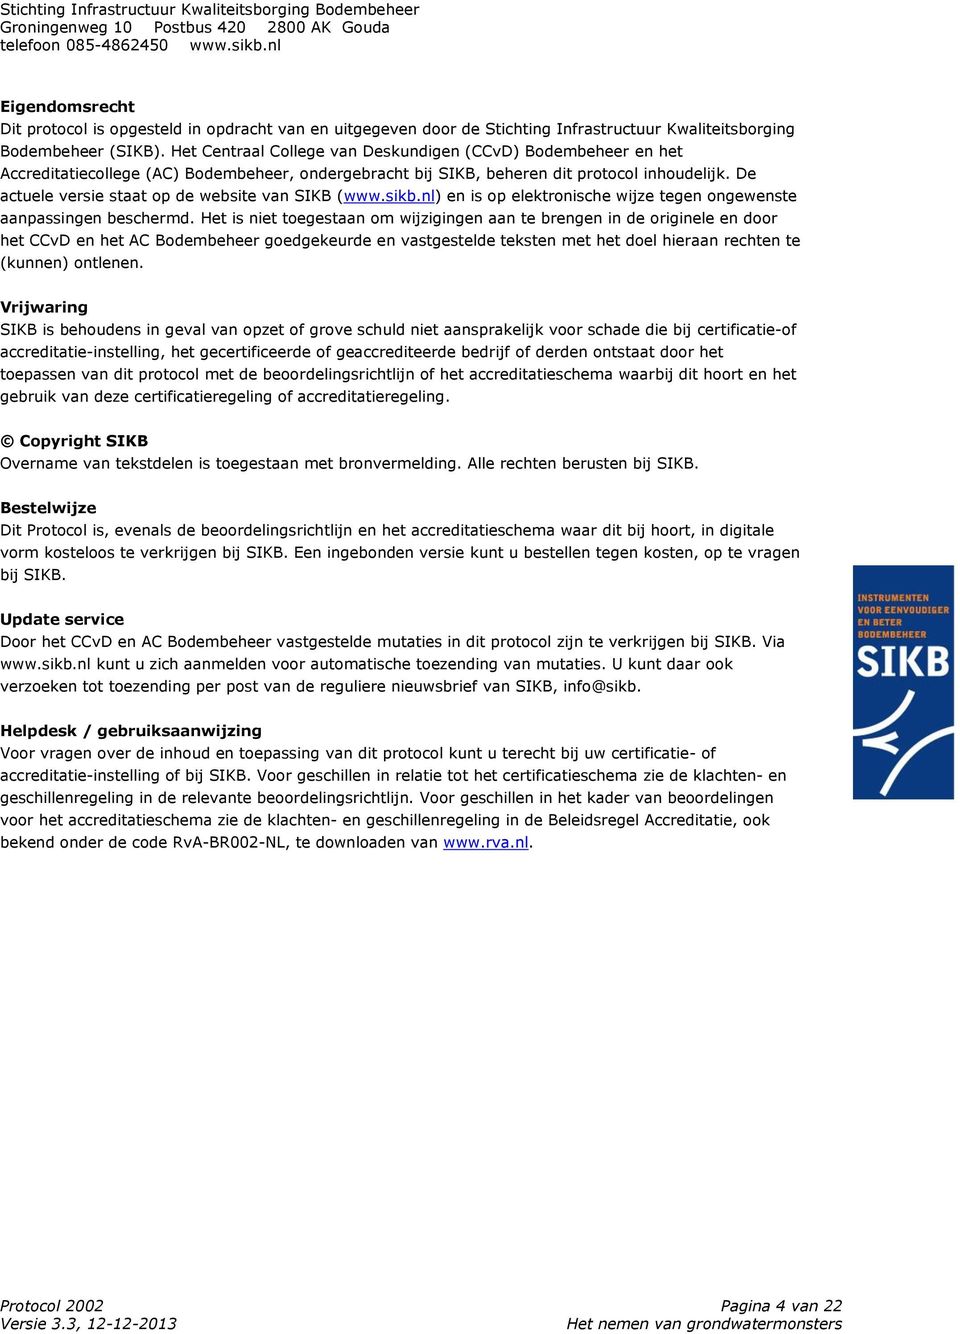 De actuele versie staat op de website van SIKB (www.sikb.nl) en is op elektronische wijze tegen ongewenste aanpassingen beschermd.